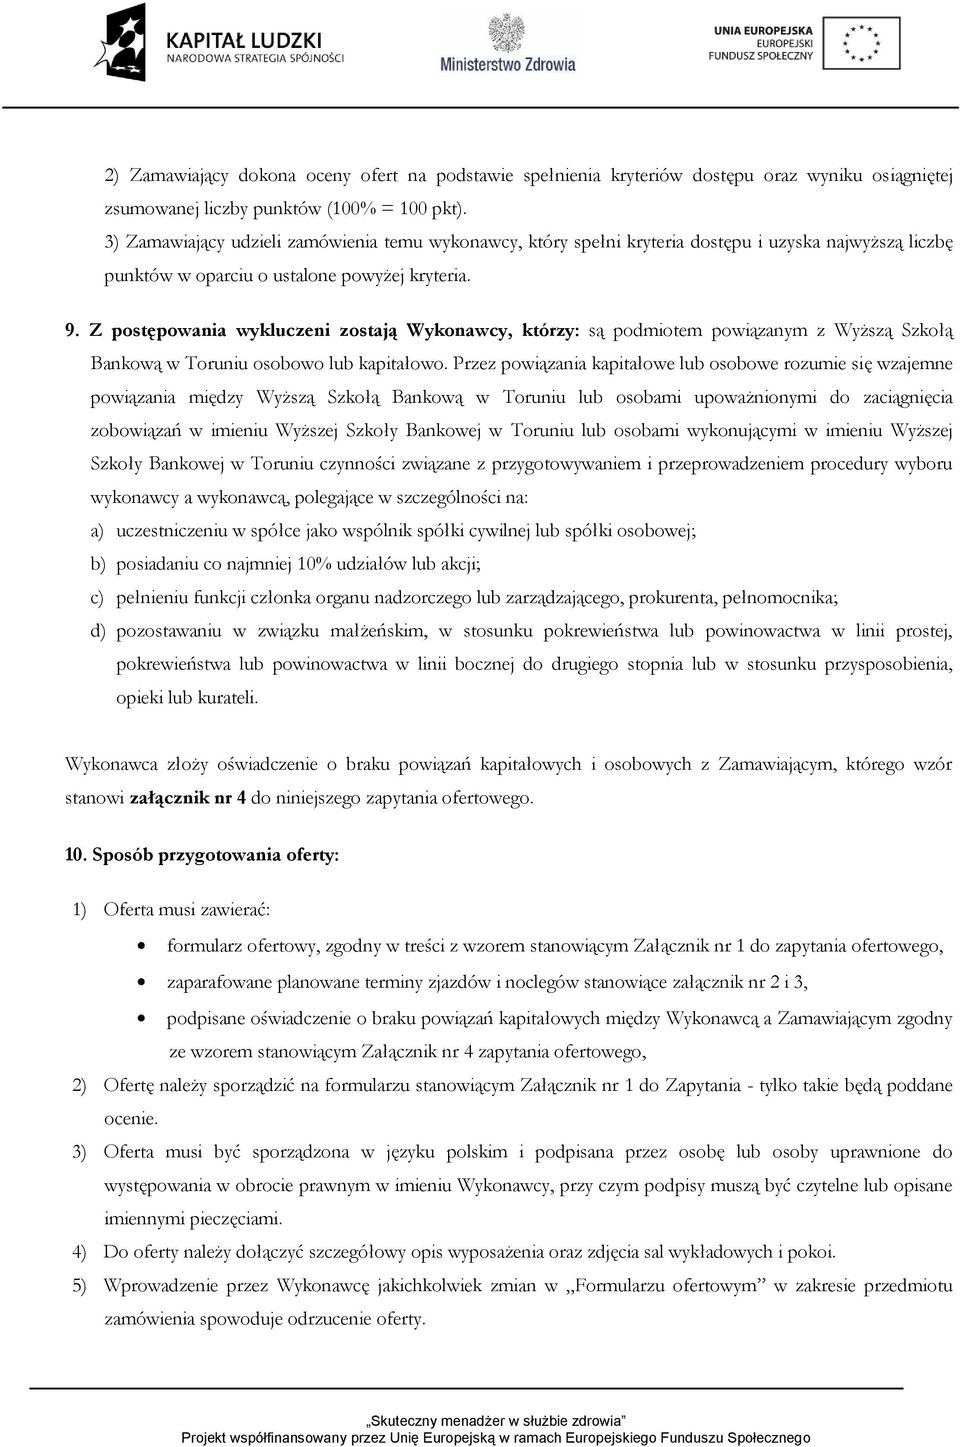 Z postępowania wykluczeni zostają Wykonawcy, którzy: są podmiotem powiązanym z Wyższą Szkołą Bankową w Toruniu osobowo lub kapitałowo.